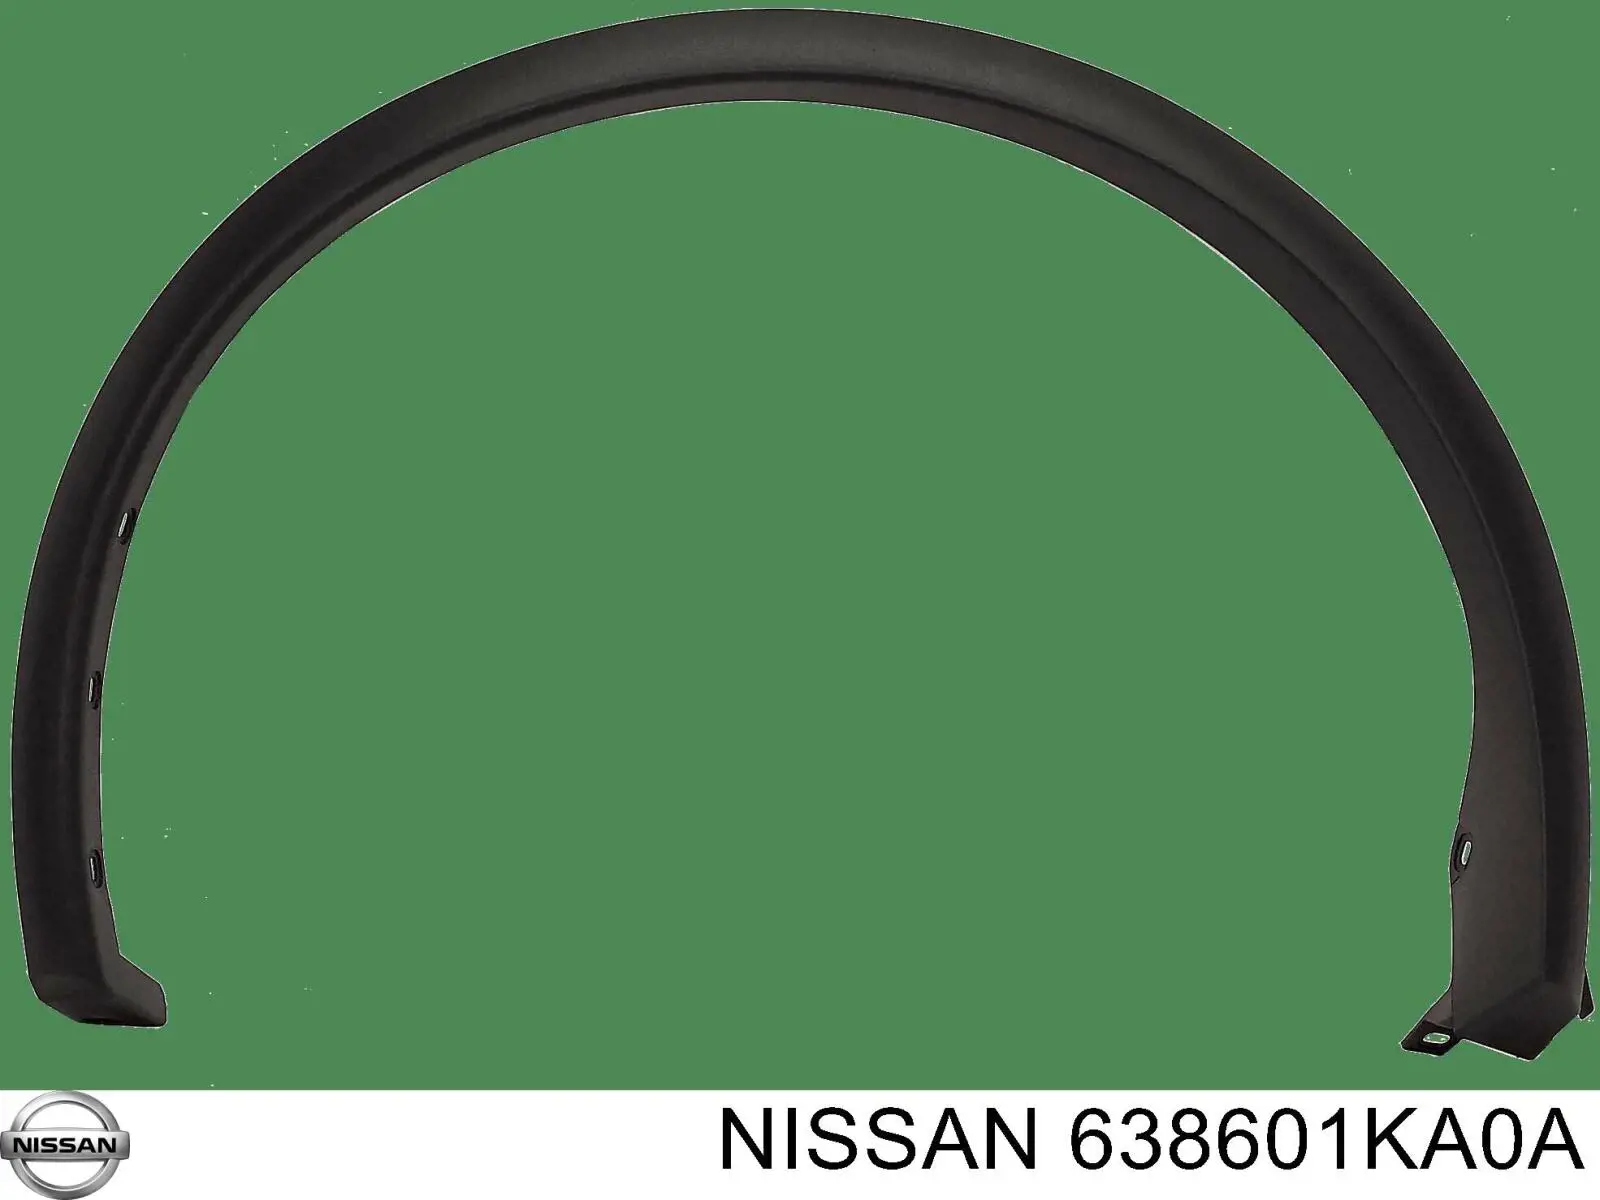 638601KA0A Nissan listón embellecedor/protector, guardabarros delantero izquierdo